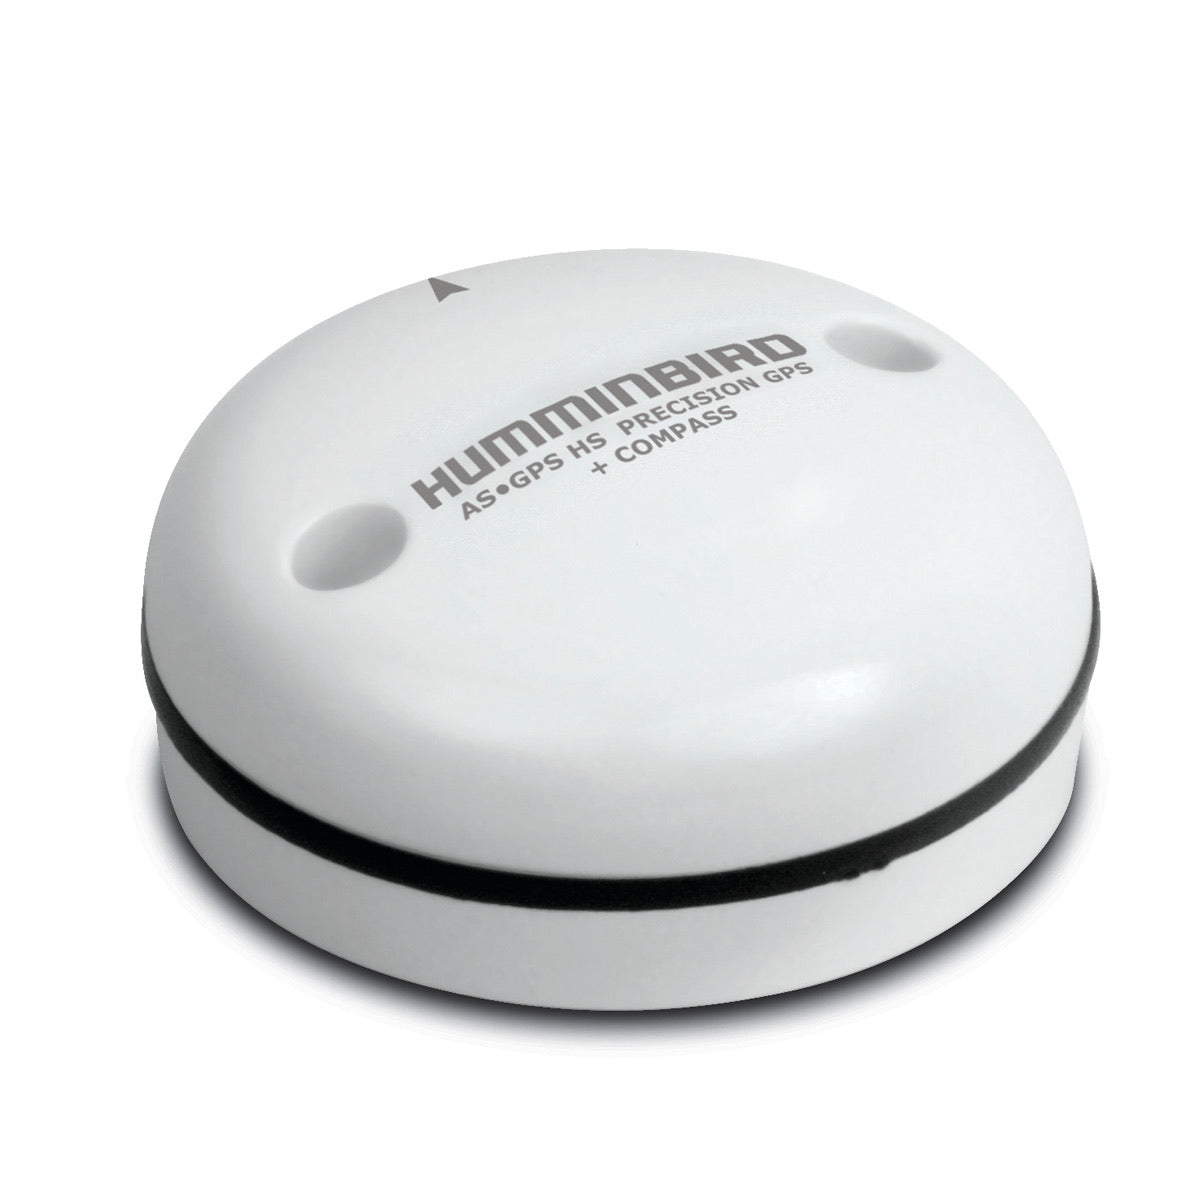 Humminbird External GPS Receiver with Heading Sensor